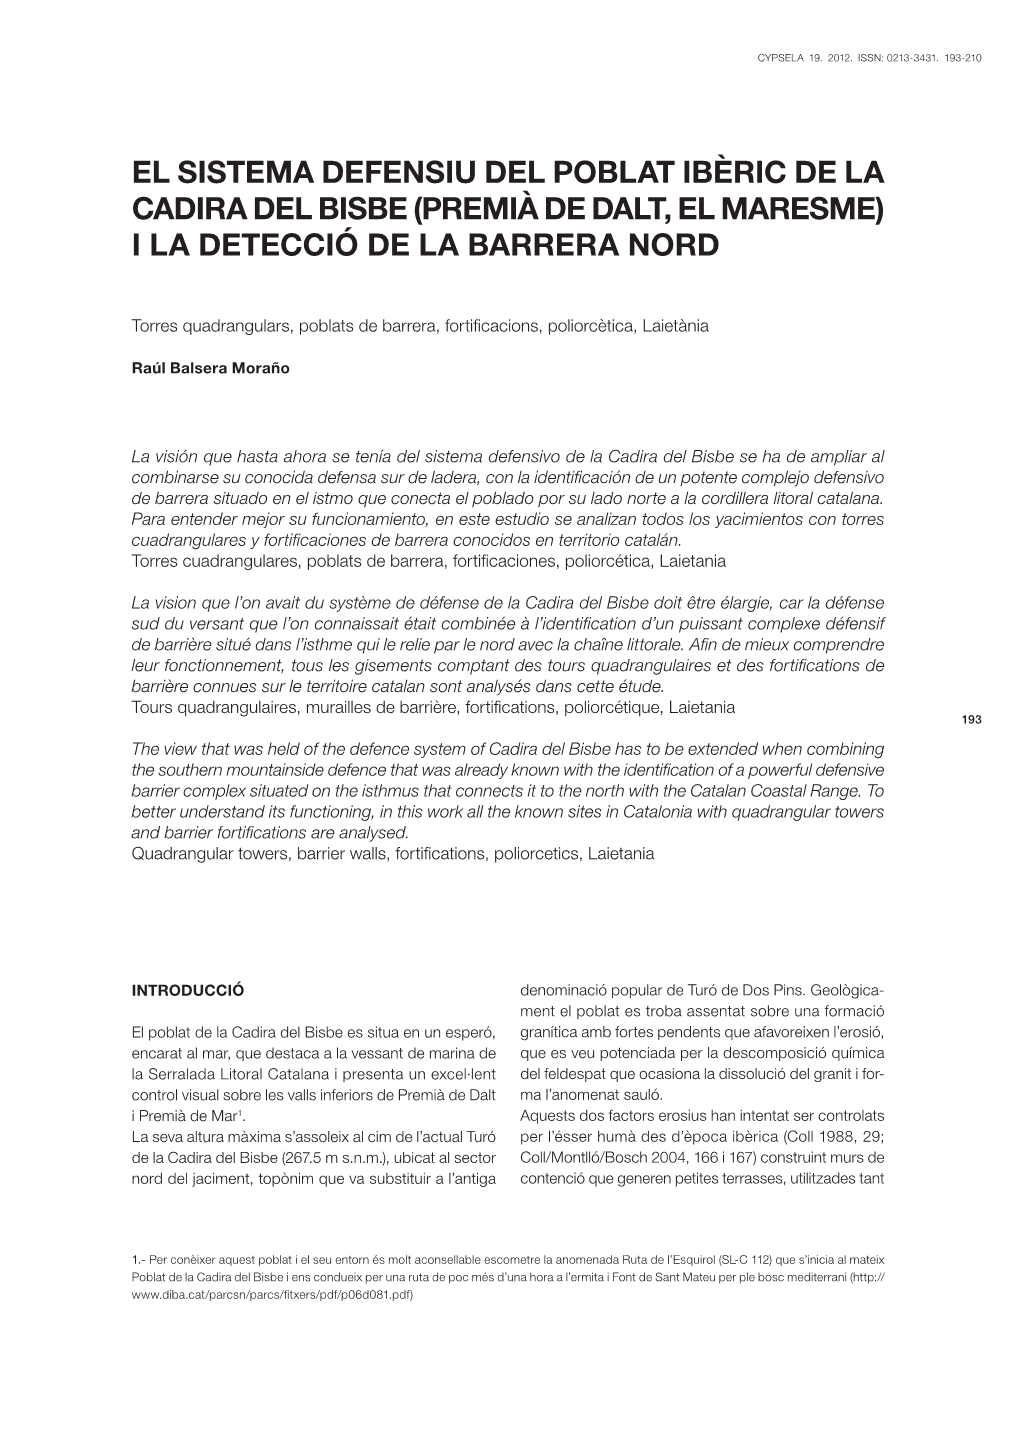 El Sistema Defensiu Del Poblat Ibèric De La Cadira Del Bisbe (Premià De Dalt, El Maresme) I La Detecció De La Barrera Nord